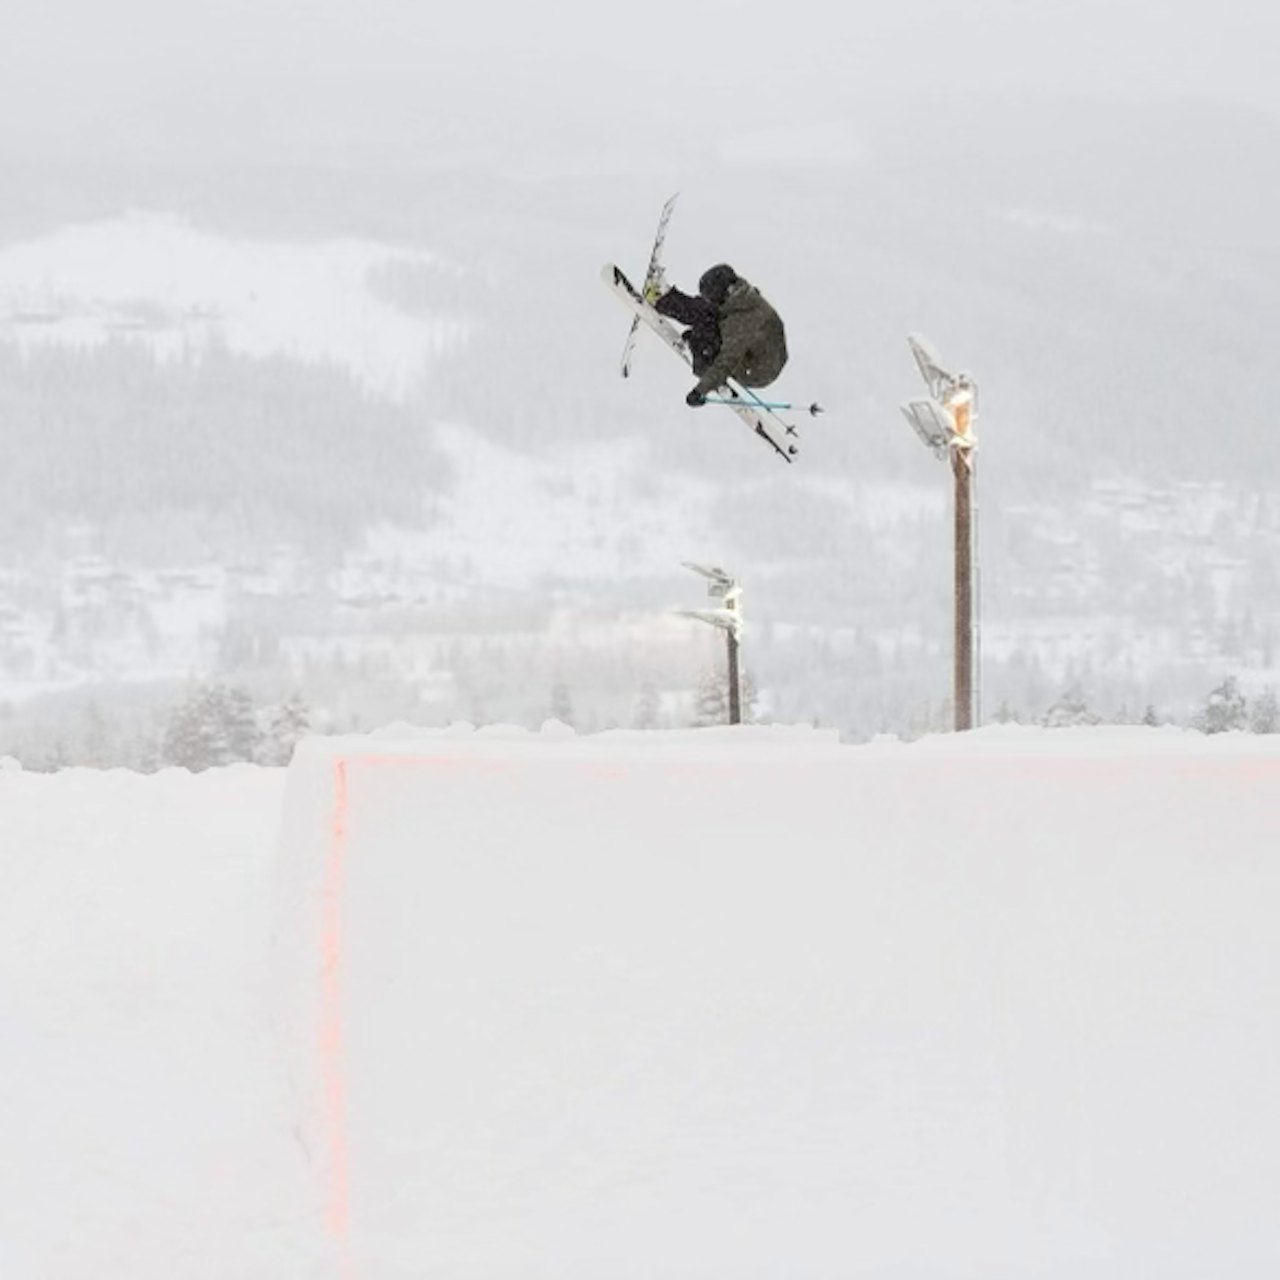 ÅPNER MED PARK: William Kalfoss ser frem til å gjøre switch 540 igjen når Trysil åpner skiheisene. Foto: Ola Matsson/Skistar Trysil